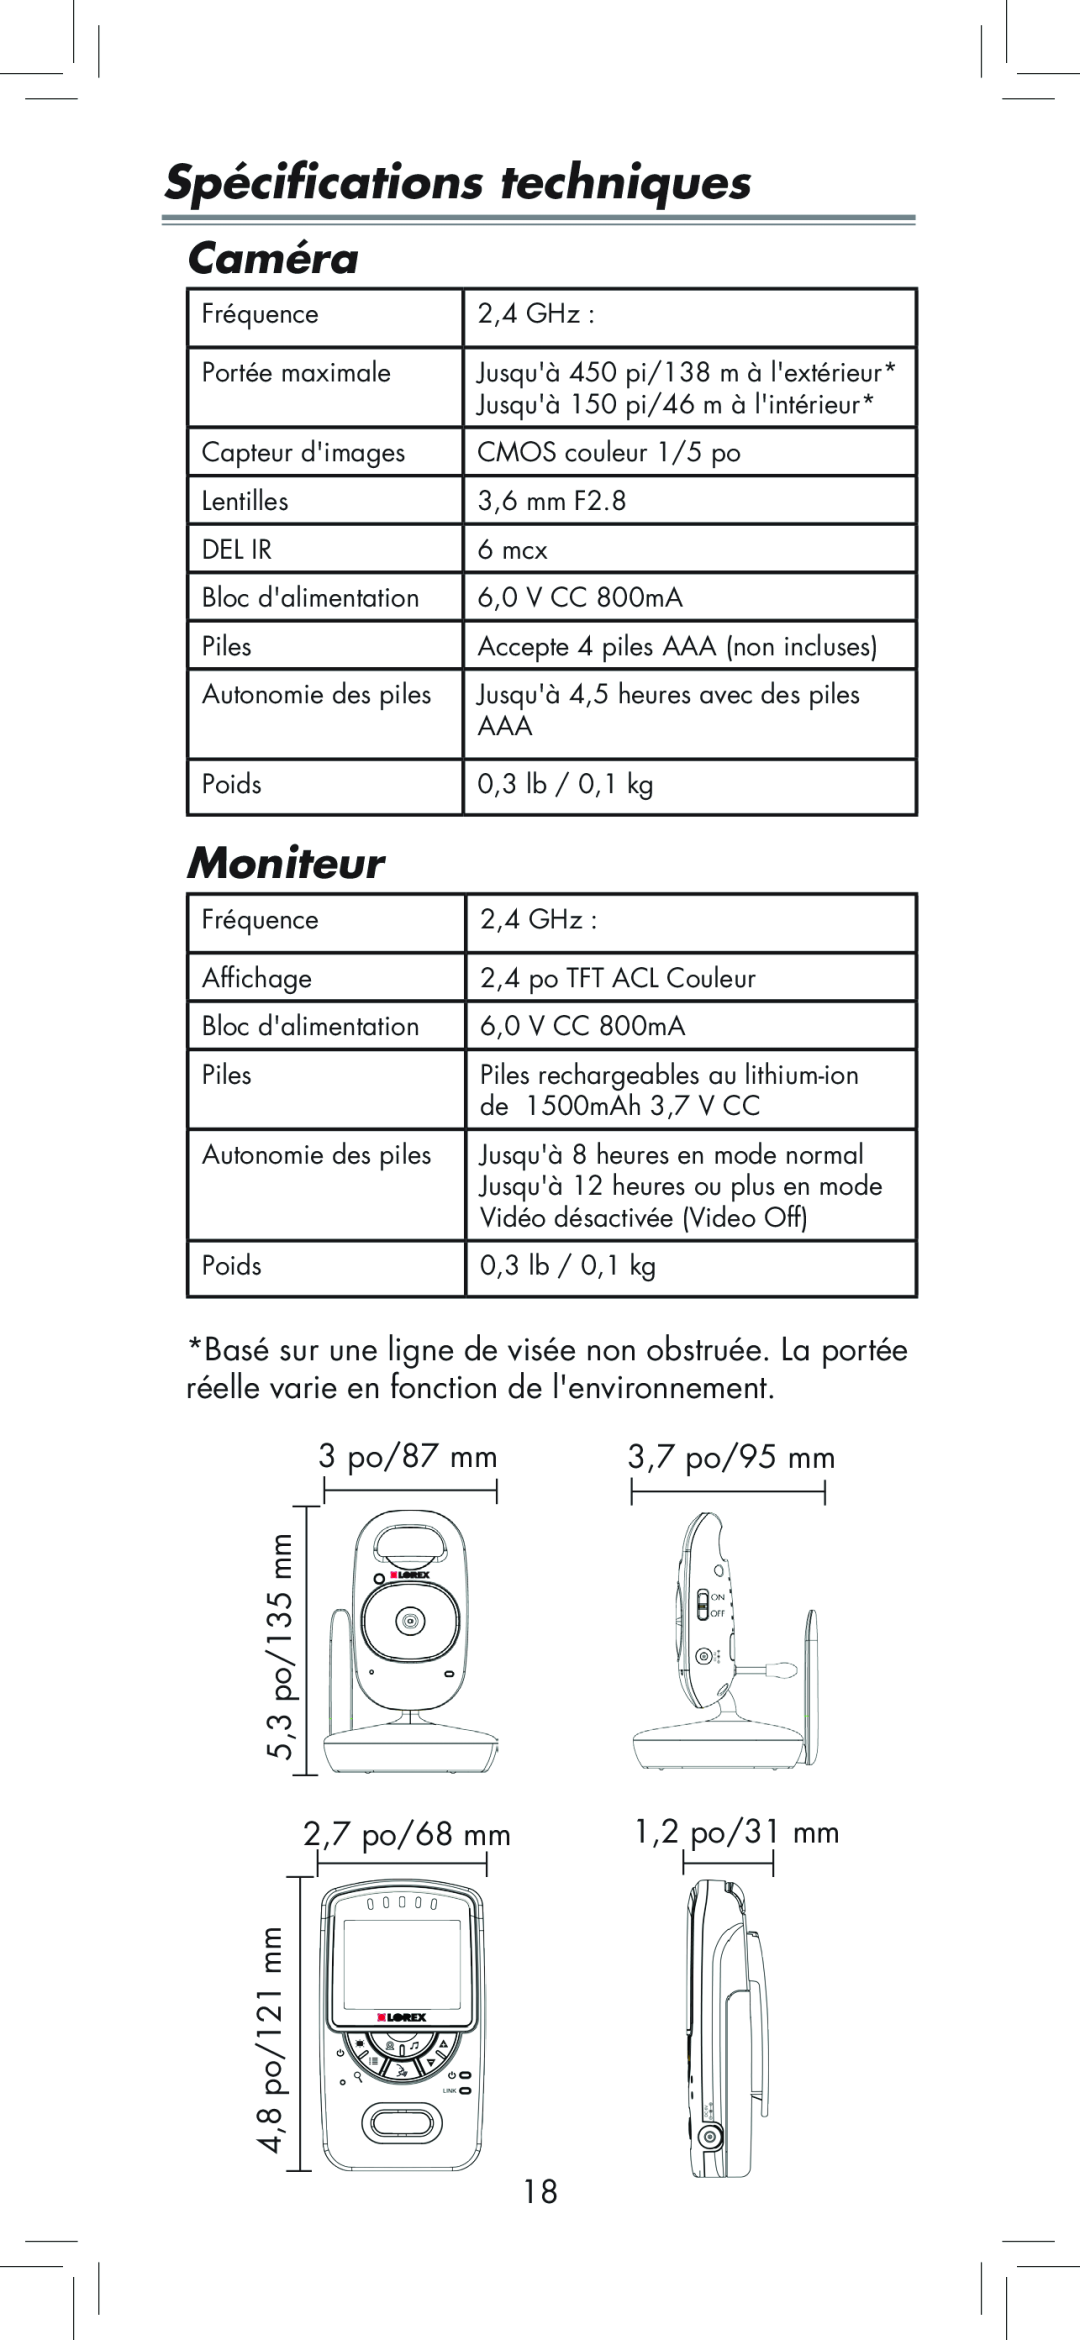 LOREX Technology BB2411 Spécifications techniques, Caméra, Moniteur, 5,3 po/135 mm 4,8 po/121 mm, 3 po/87 mm, 3,7 po/95 mm 